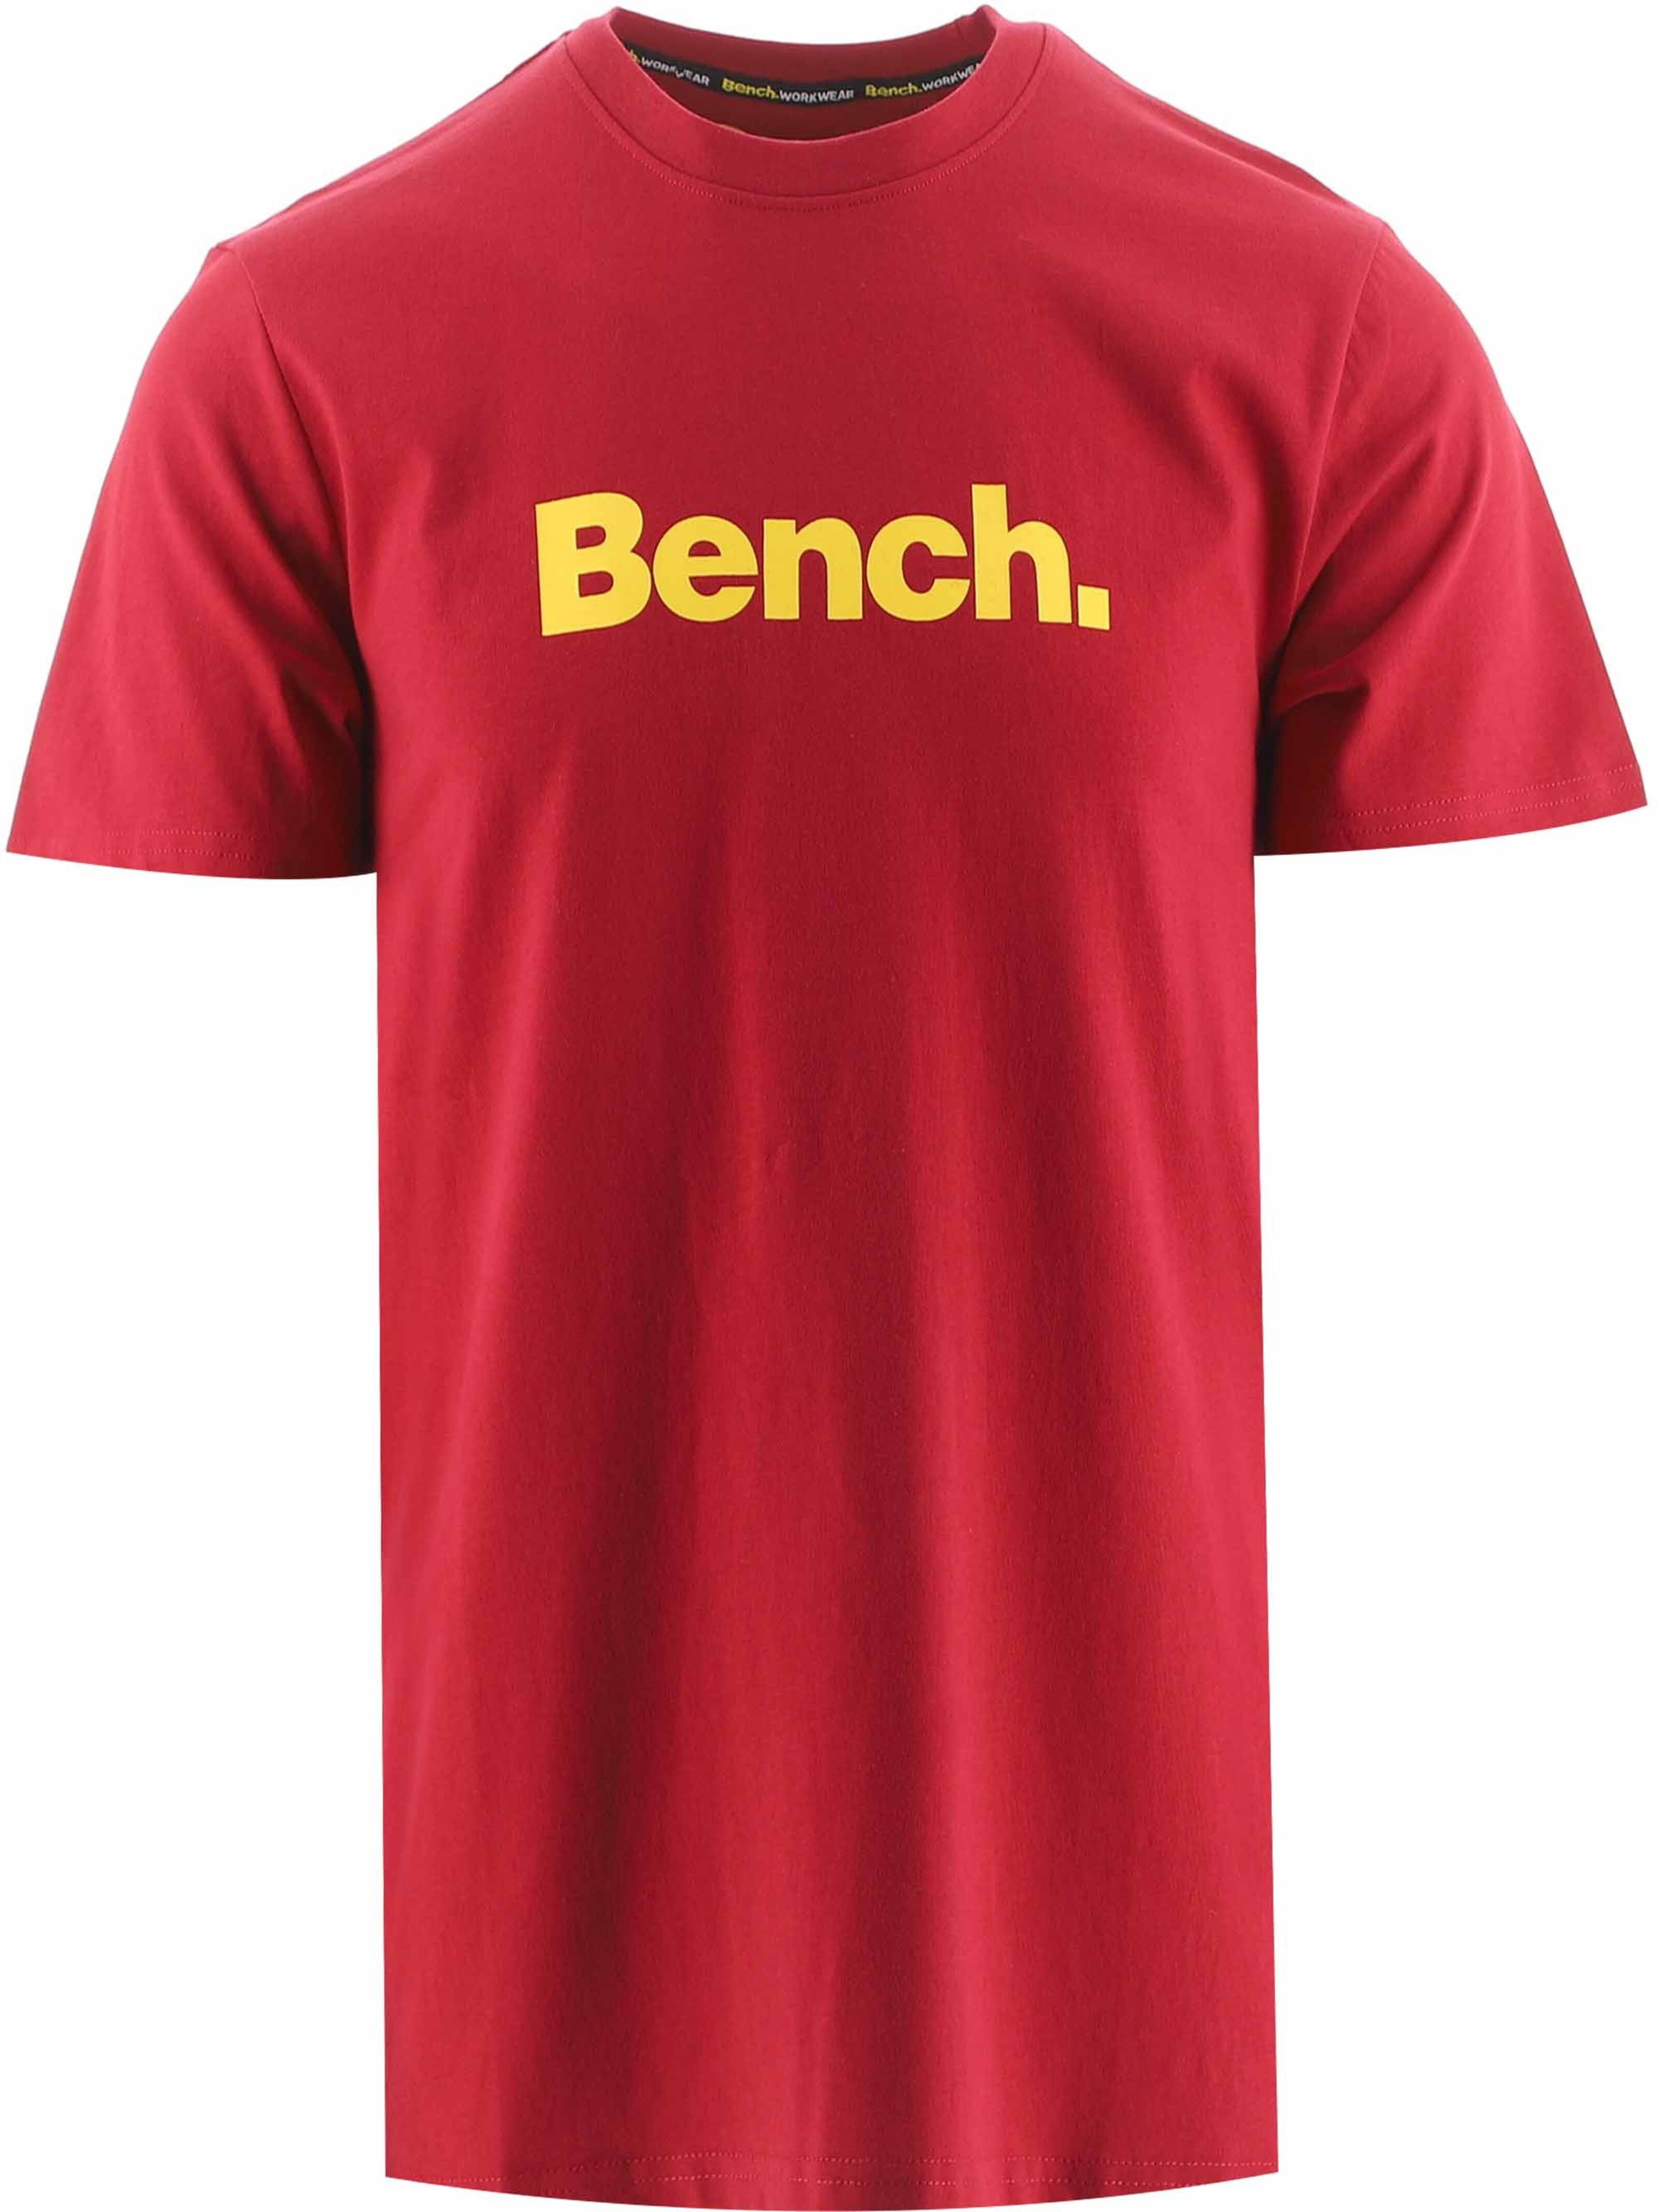 Kaufen Sie Großhandelspreisen Cornwall-T-Shirt Bank-rotes zu